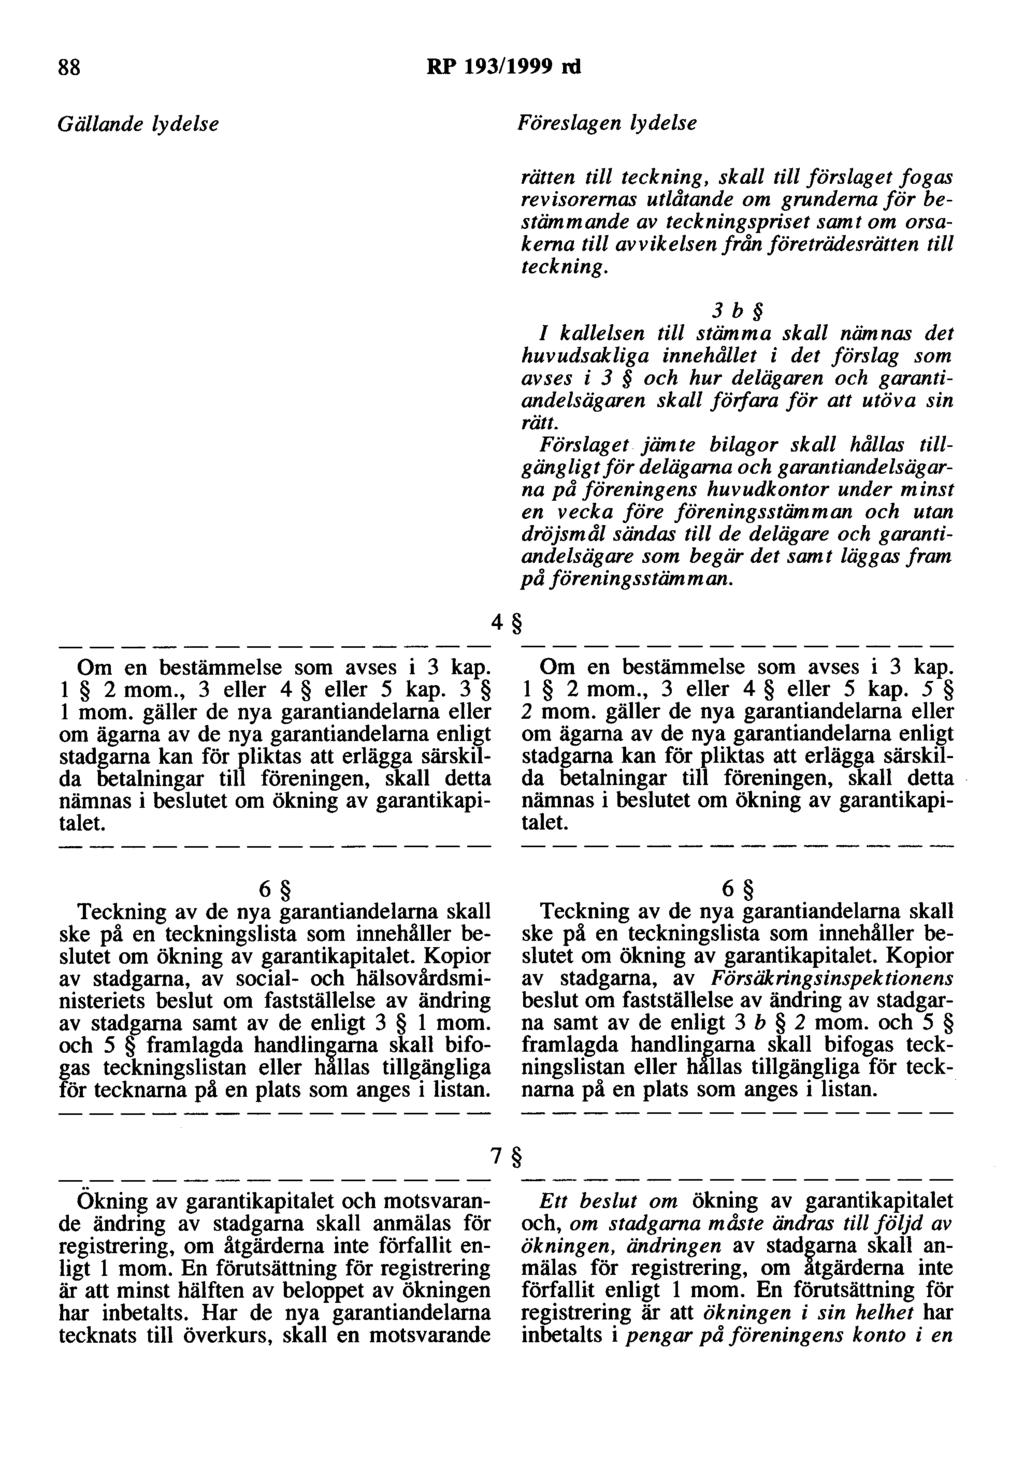 88 RP 193/1999 rd 4 rätten till teckning, skall till förslaget fogas revisorernas utlåtande om grunderna för bestämmande av teckningspriset samt om orsakerna till avvikelsen från företrädesrätten